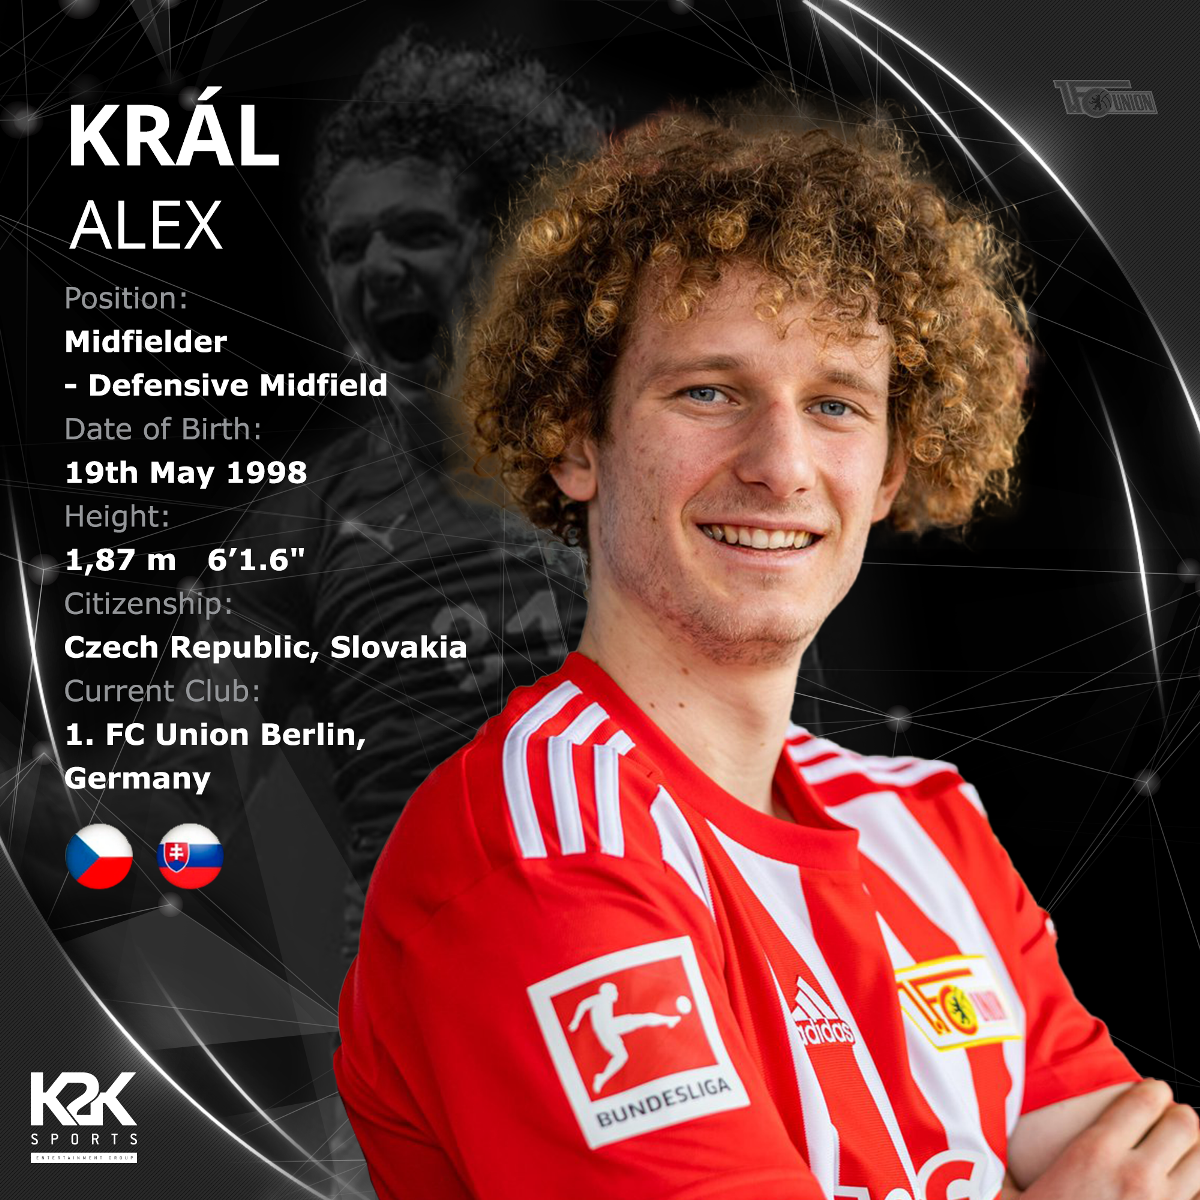 Alex Král